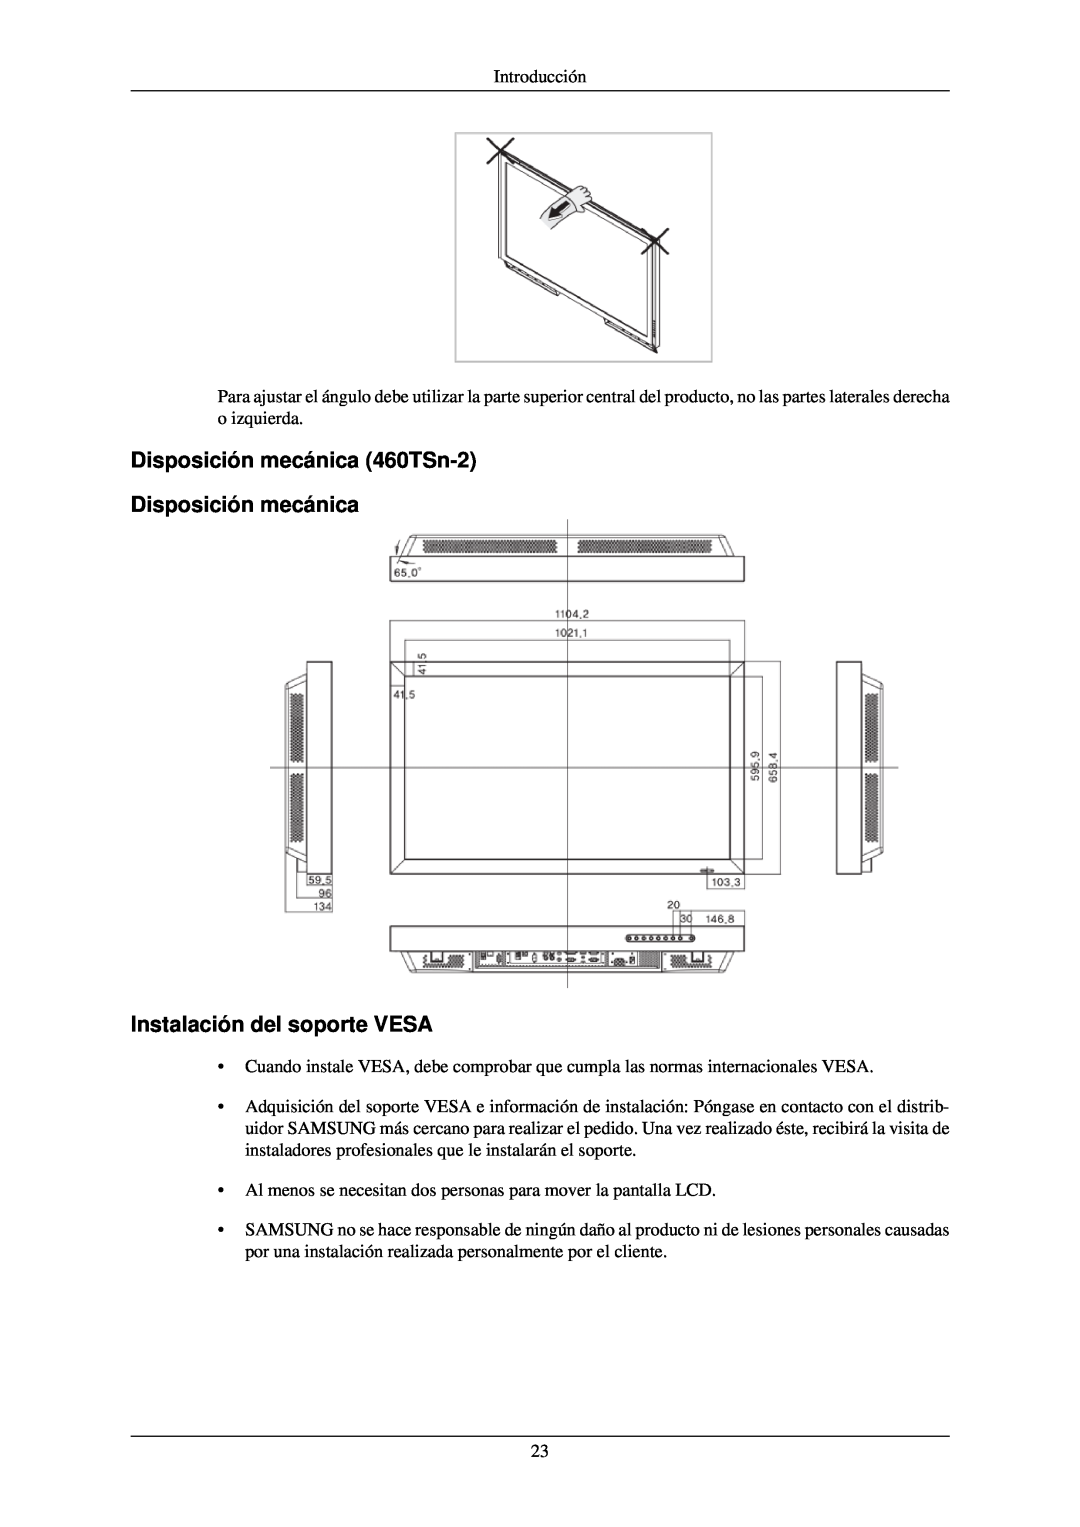 Samsung LH40TCUMBC/EN, LH40TCUMBG/EN manual Disposición mecánica 460TSn-2 Disposición mecánica, Instalación del soporte VESA 